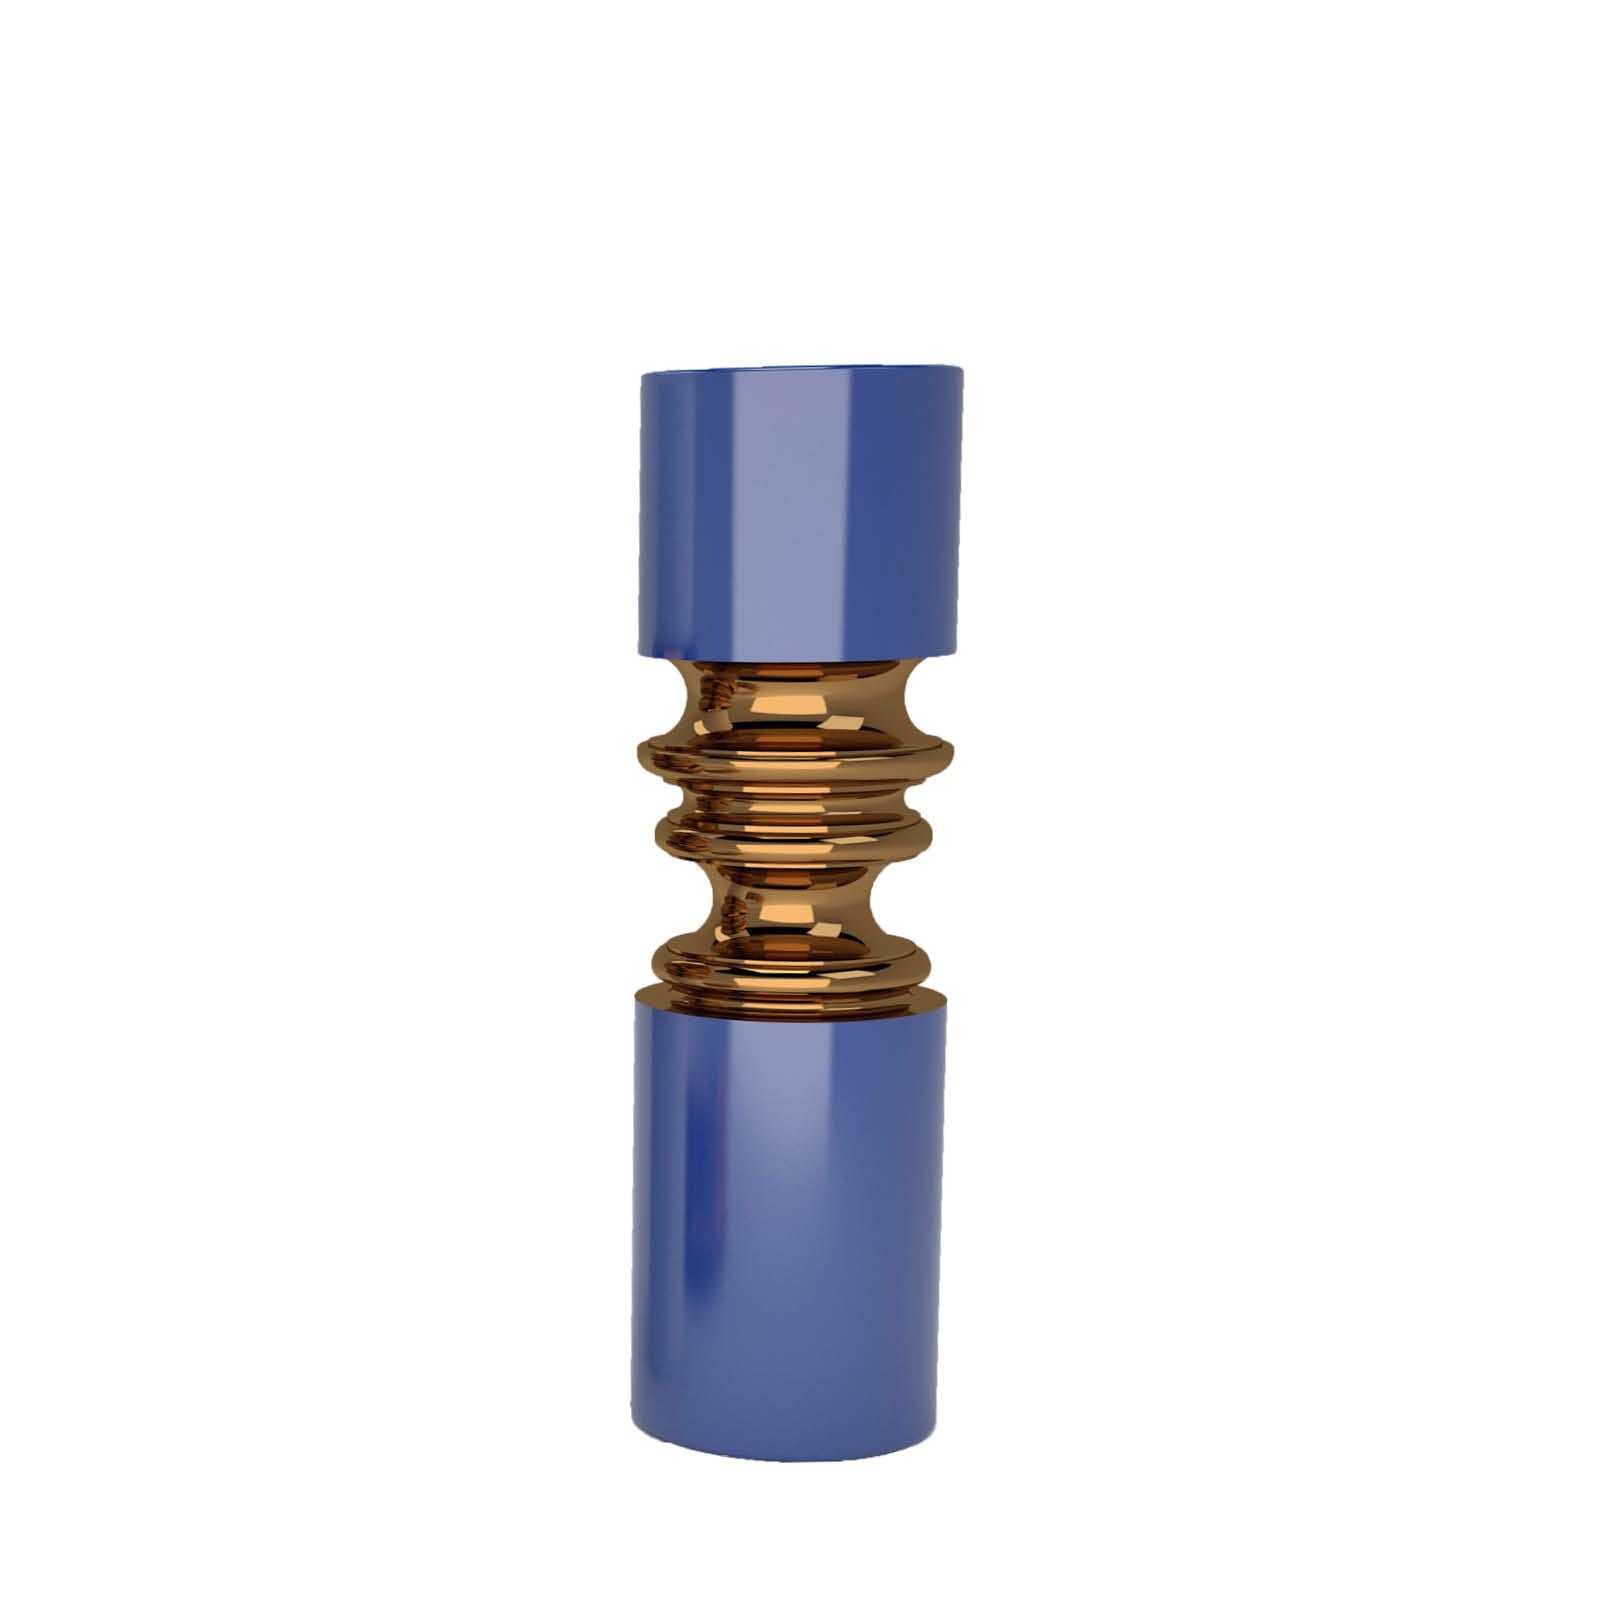 Driade Ordini Vase Cobalt Blue and Bronze | Panik Design